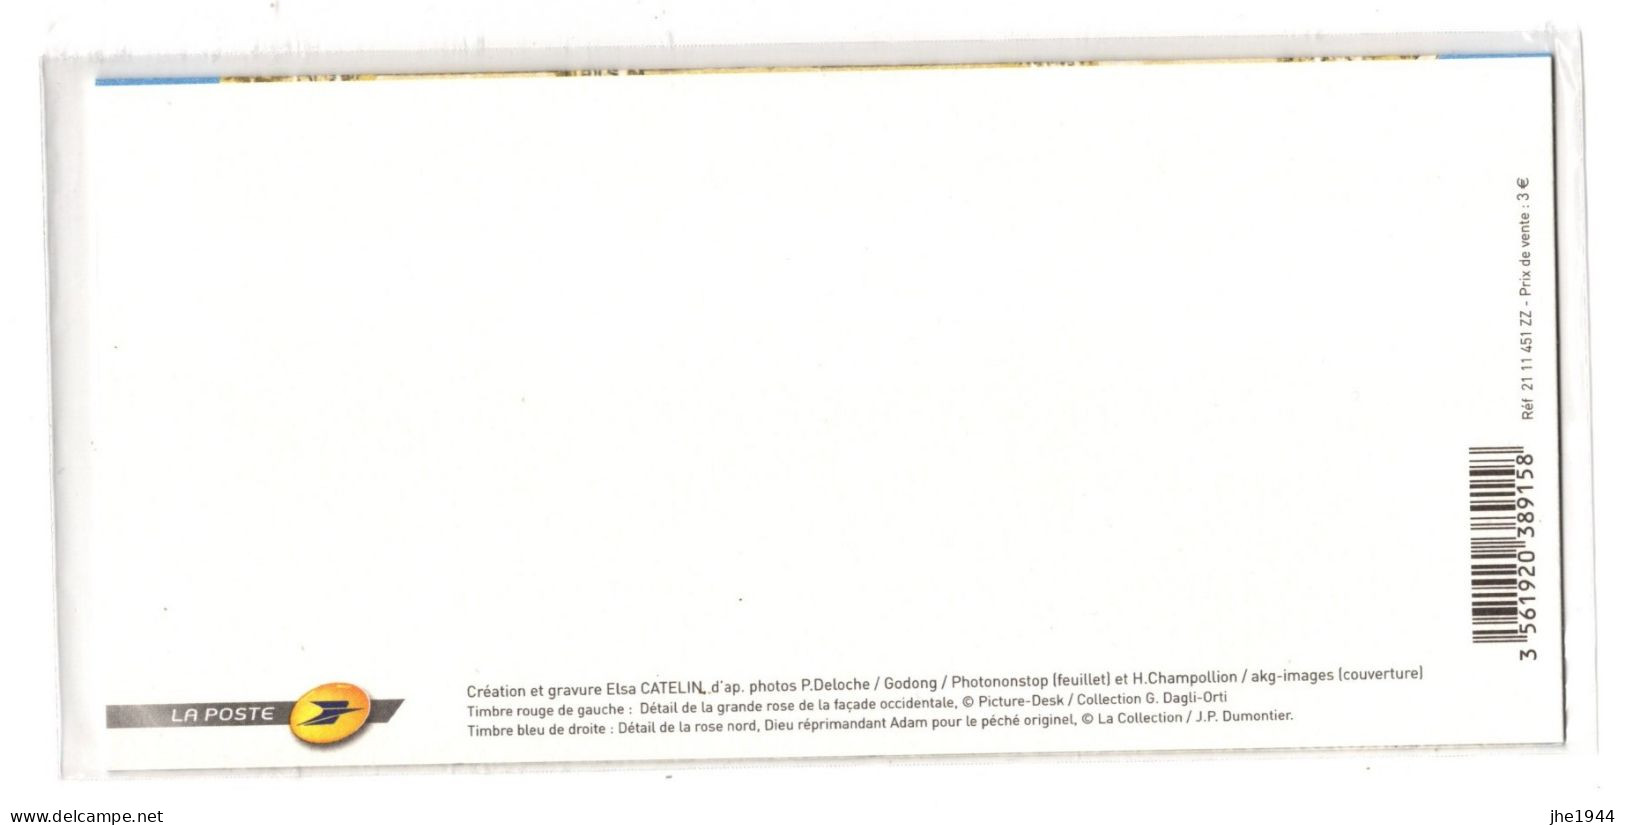 France Bloc Souvenir N° 58 ** Cathédrale De Reims, 800 éme Anniversaire - Souvenir Blocks & Sheetlets